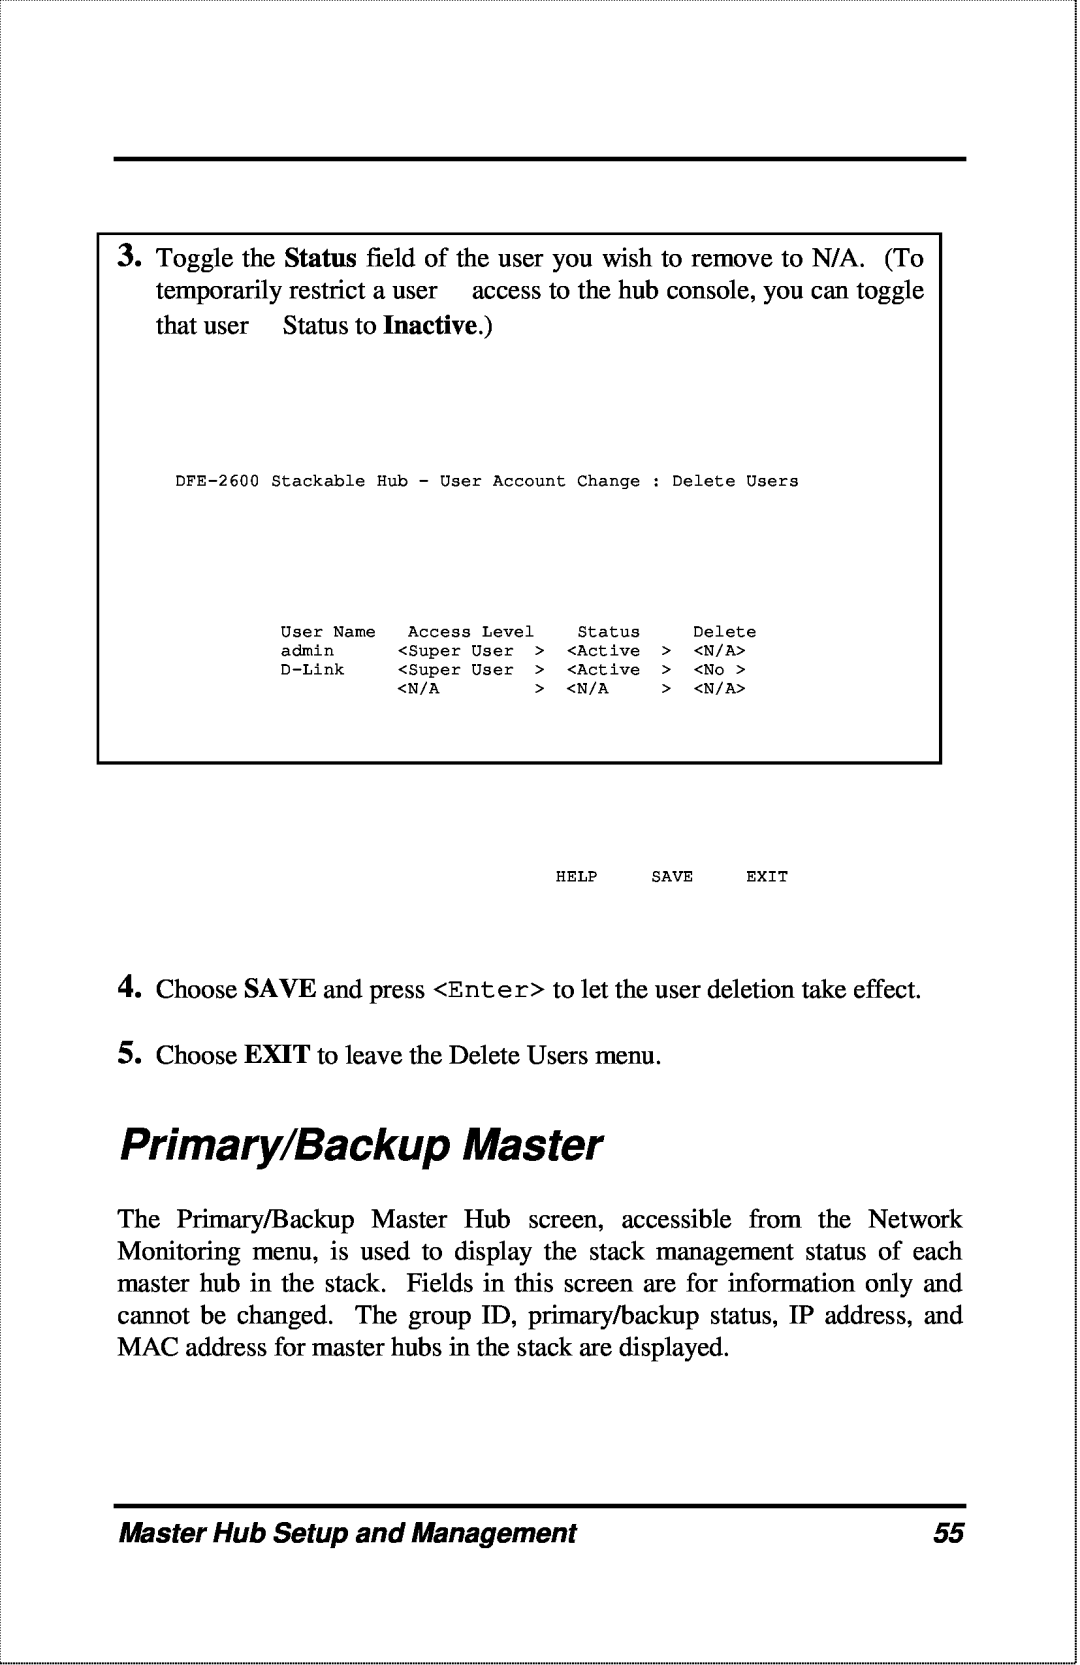 D-Link DFE-2600 manual Primary/Backup Master, Master Hub Setup and Management 